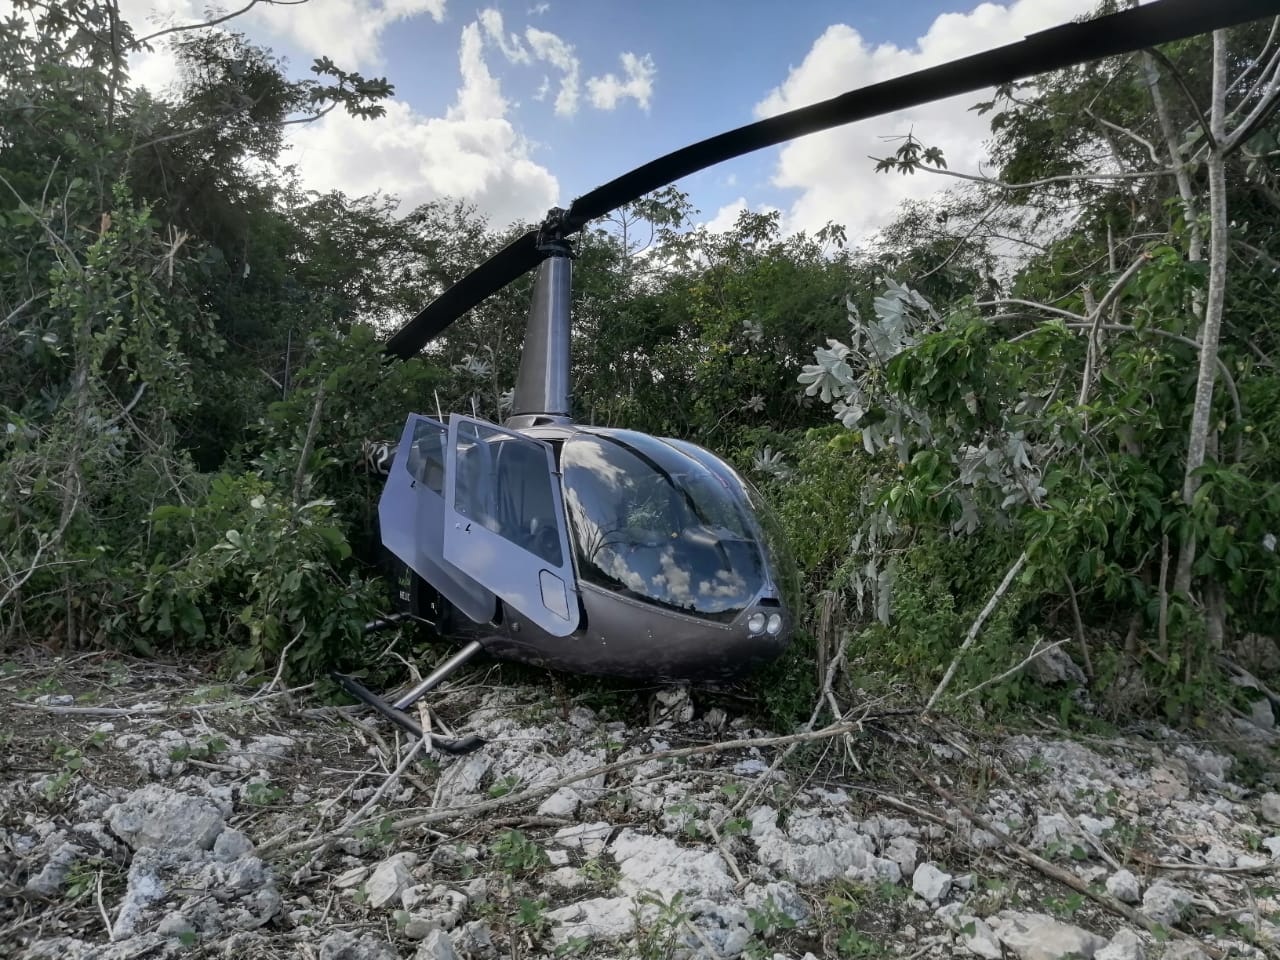 Helicóptero de Helidosa realiza aterrizaje de precaución